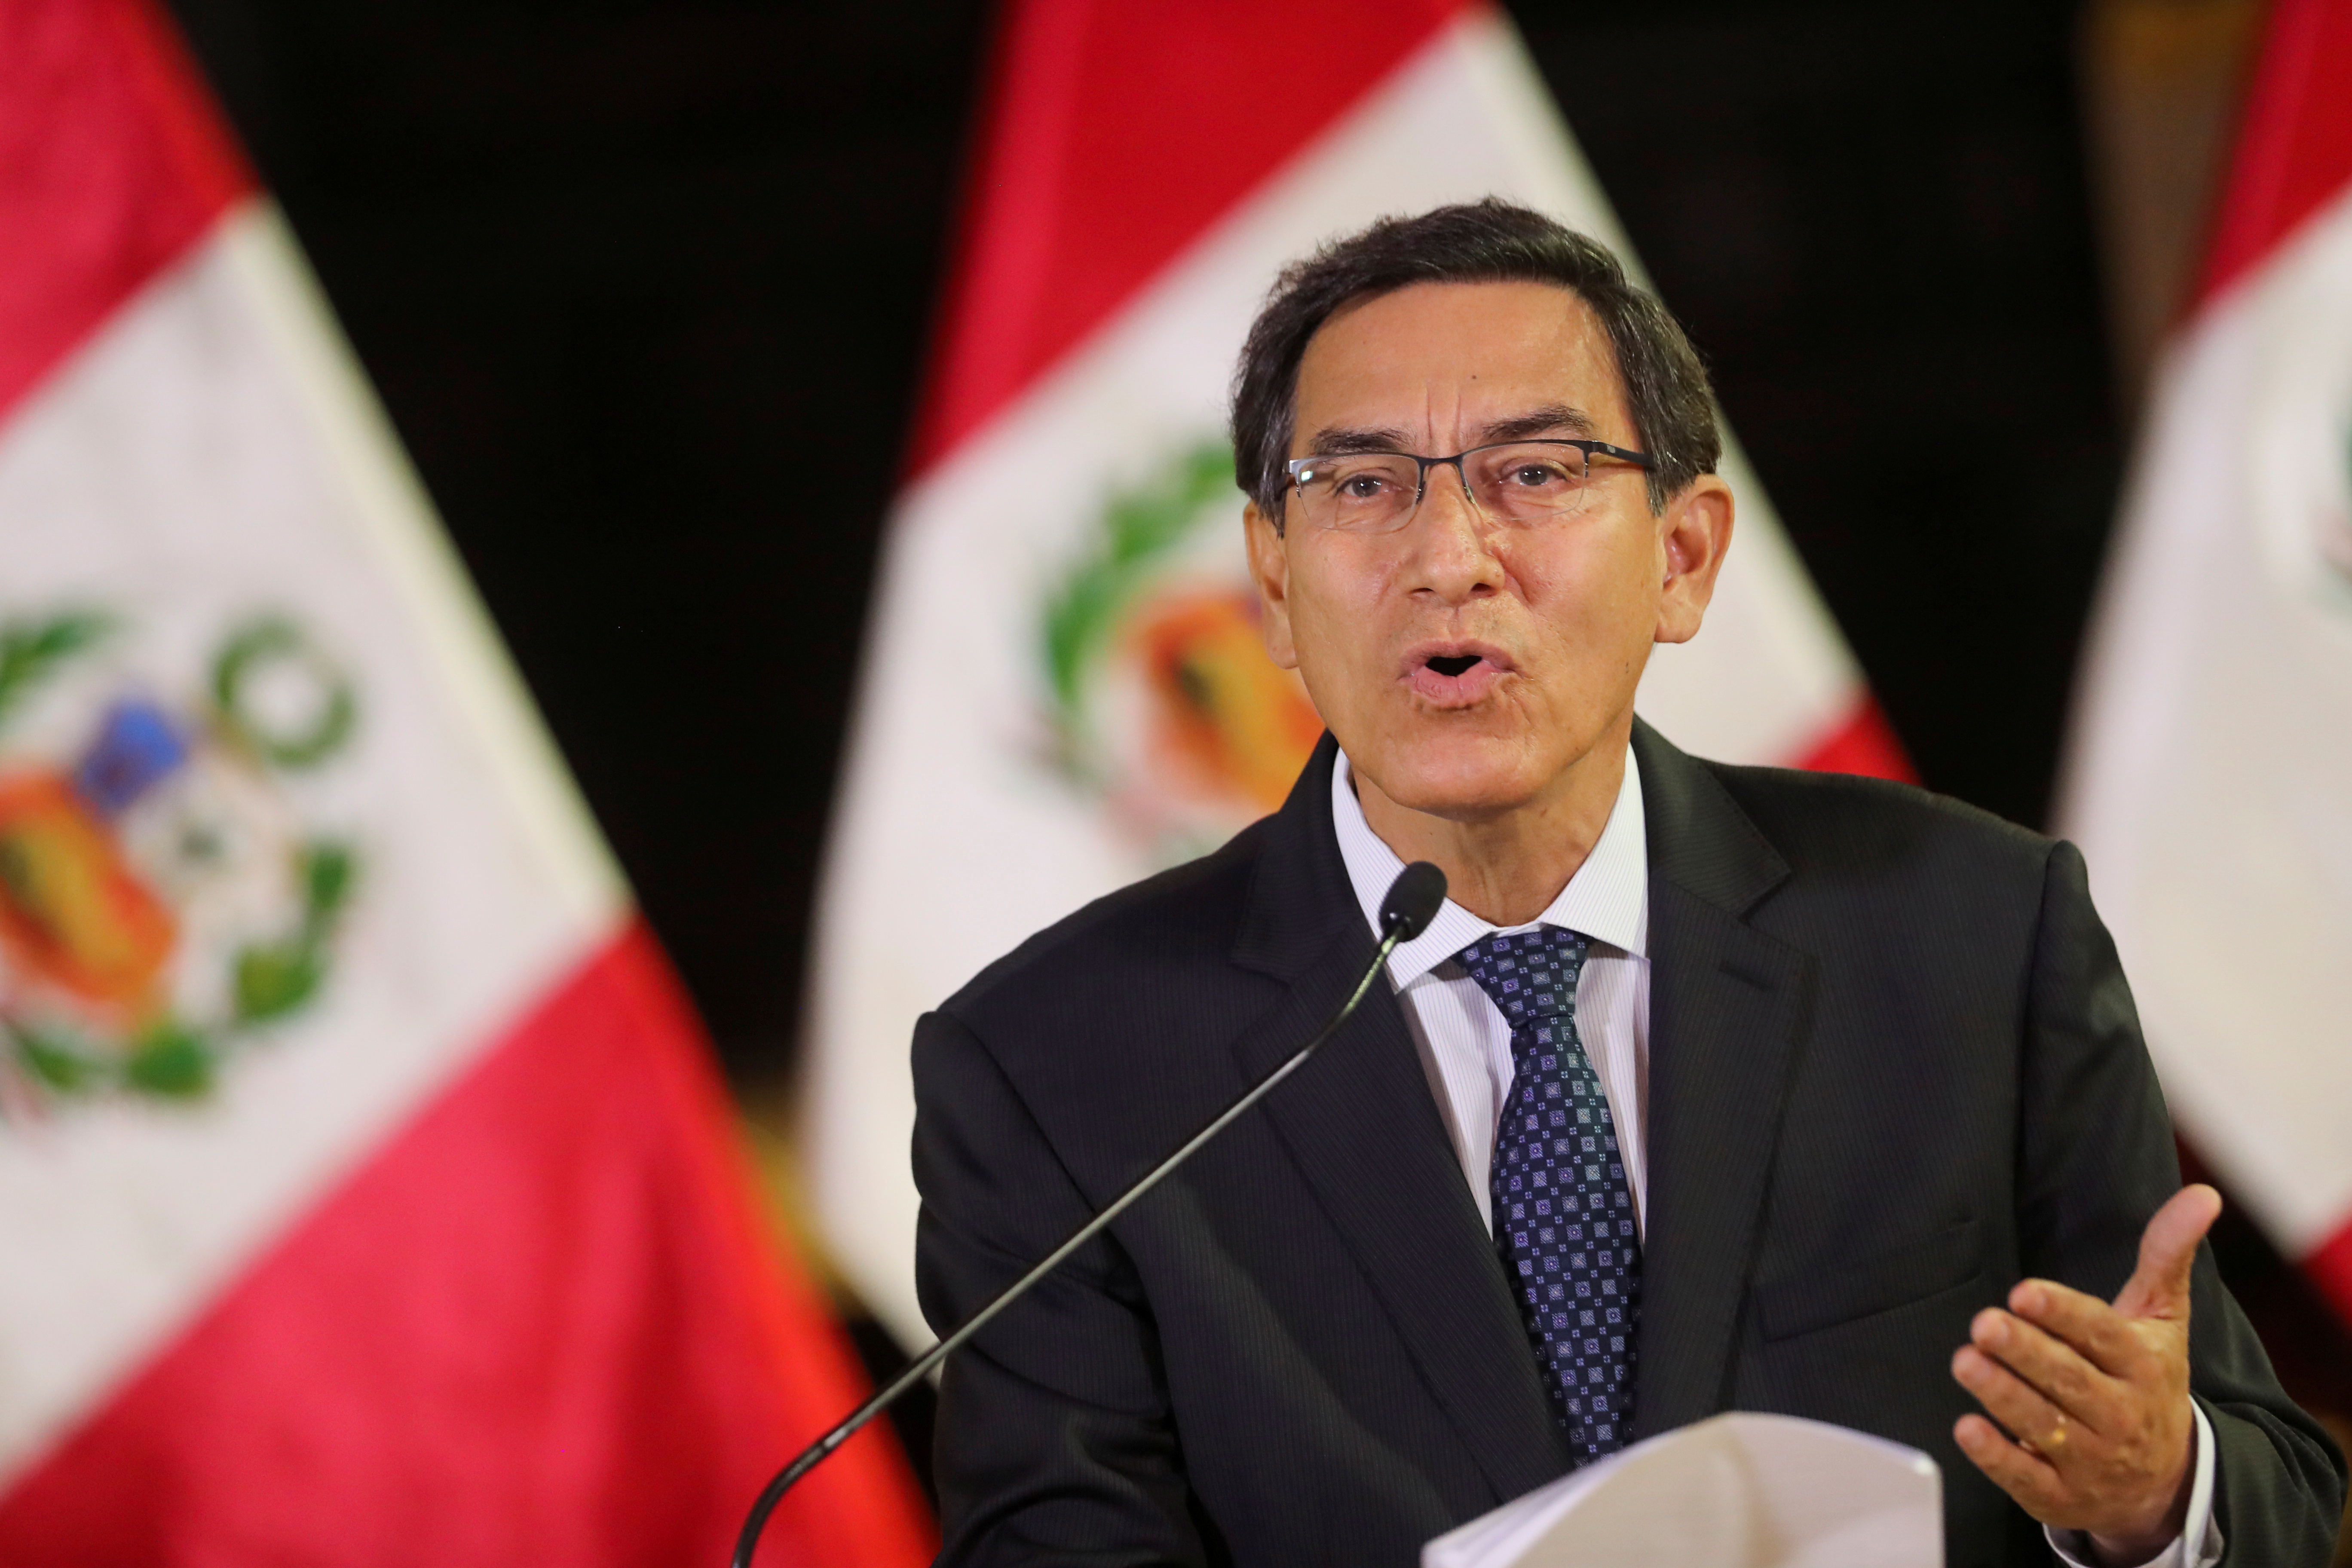 El Gobierno de Perú, “indignado” tras conocer que Martín Vizcarra se vacunó contra el coronavirus en 2020